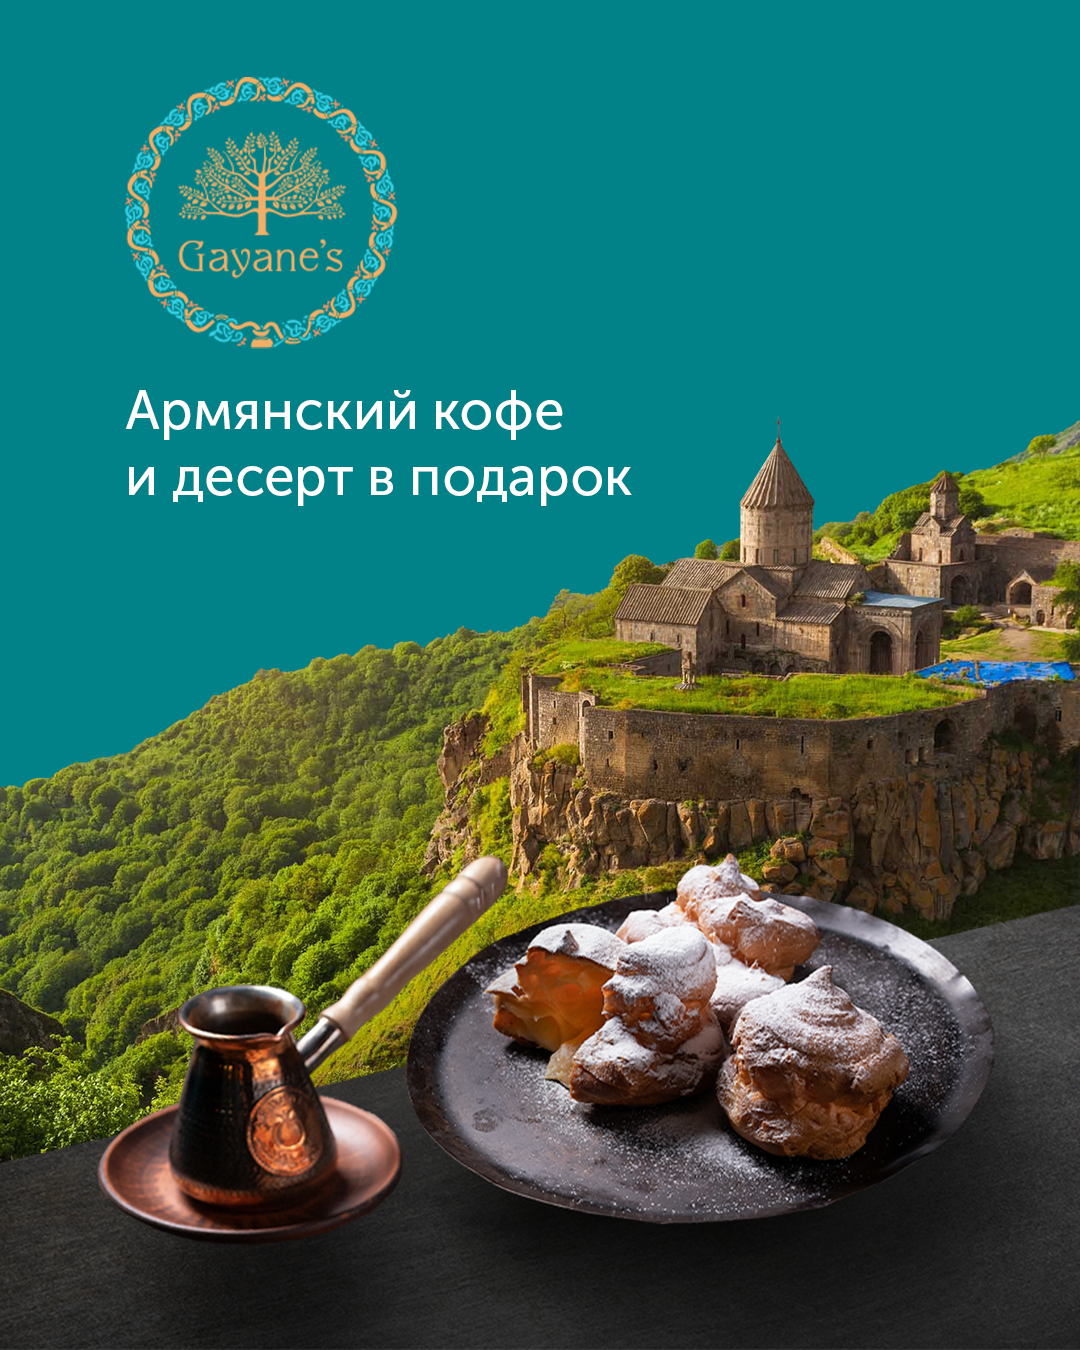 Армянский кофе и эклер в подарок от Gayane’s! 